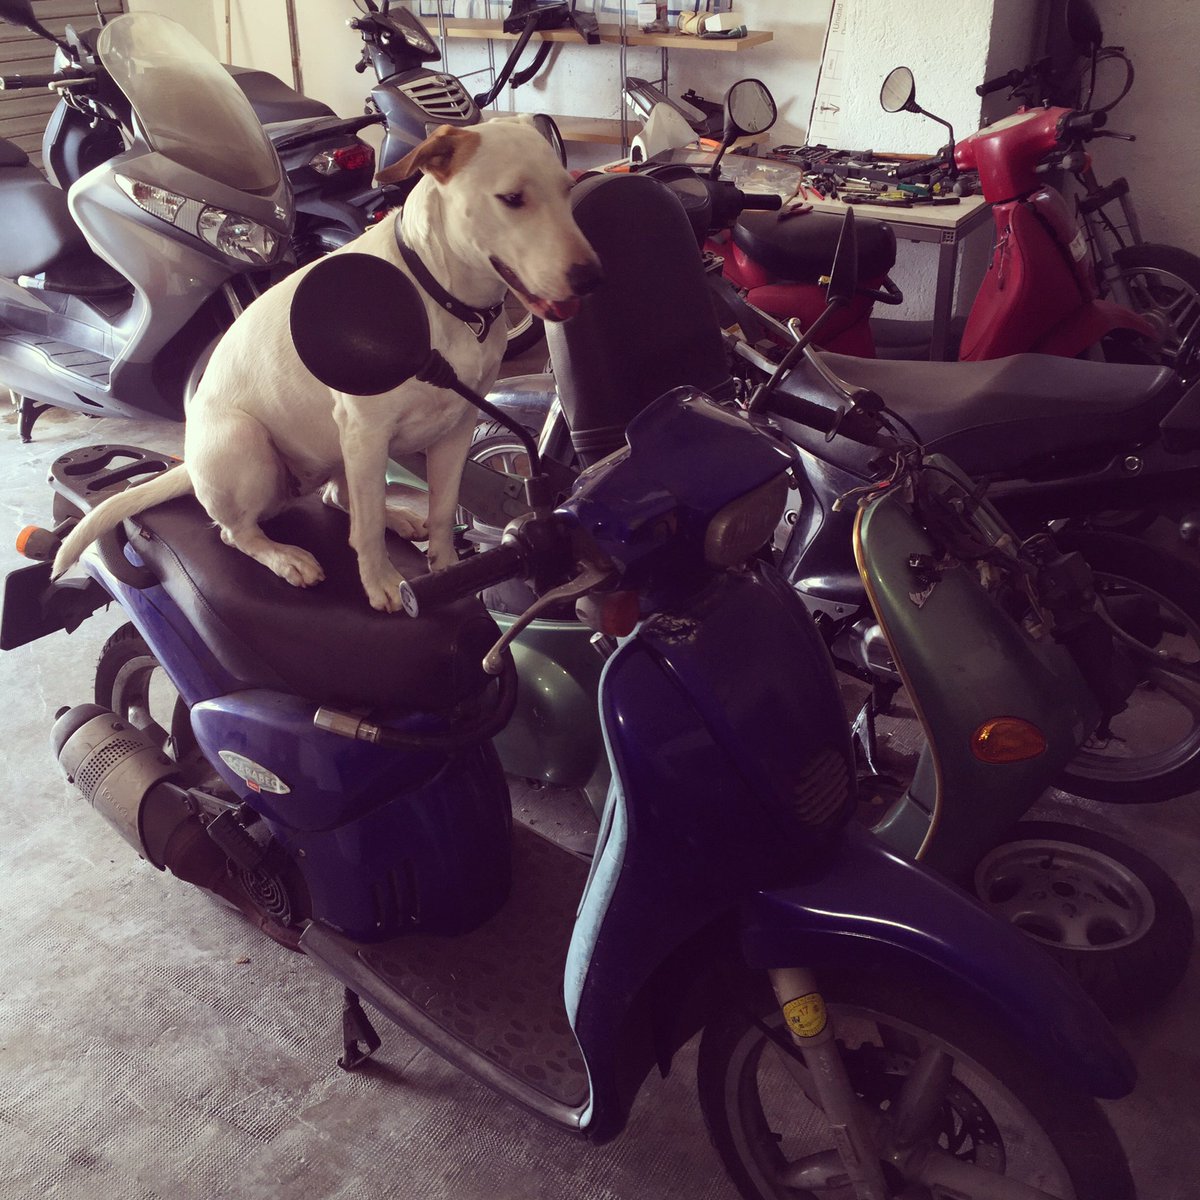 Al perrito de amqm recambios también le gustan las motos! #dog #AragonGP #bikeparts #perros #bullterier #amqm #dogs #recambiodemotos